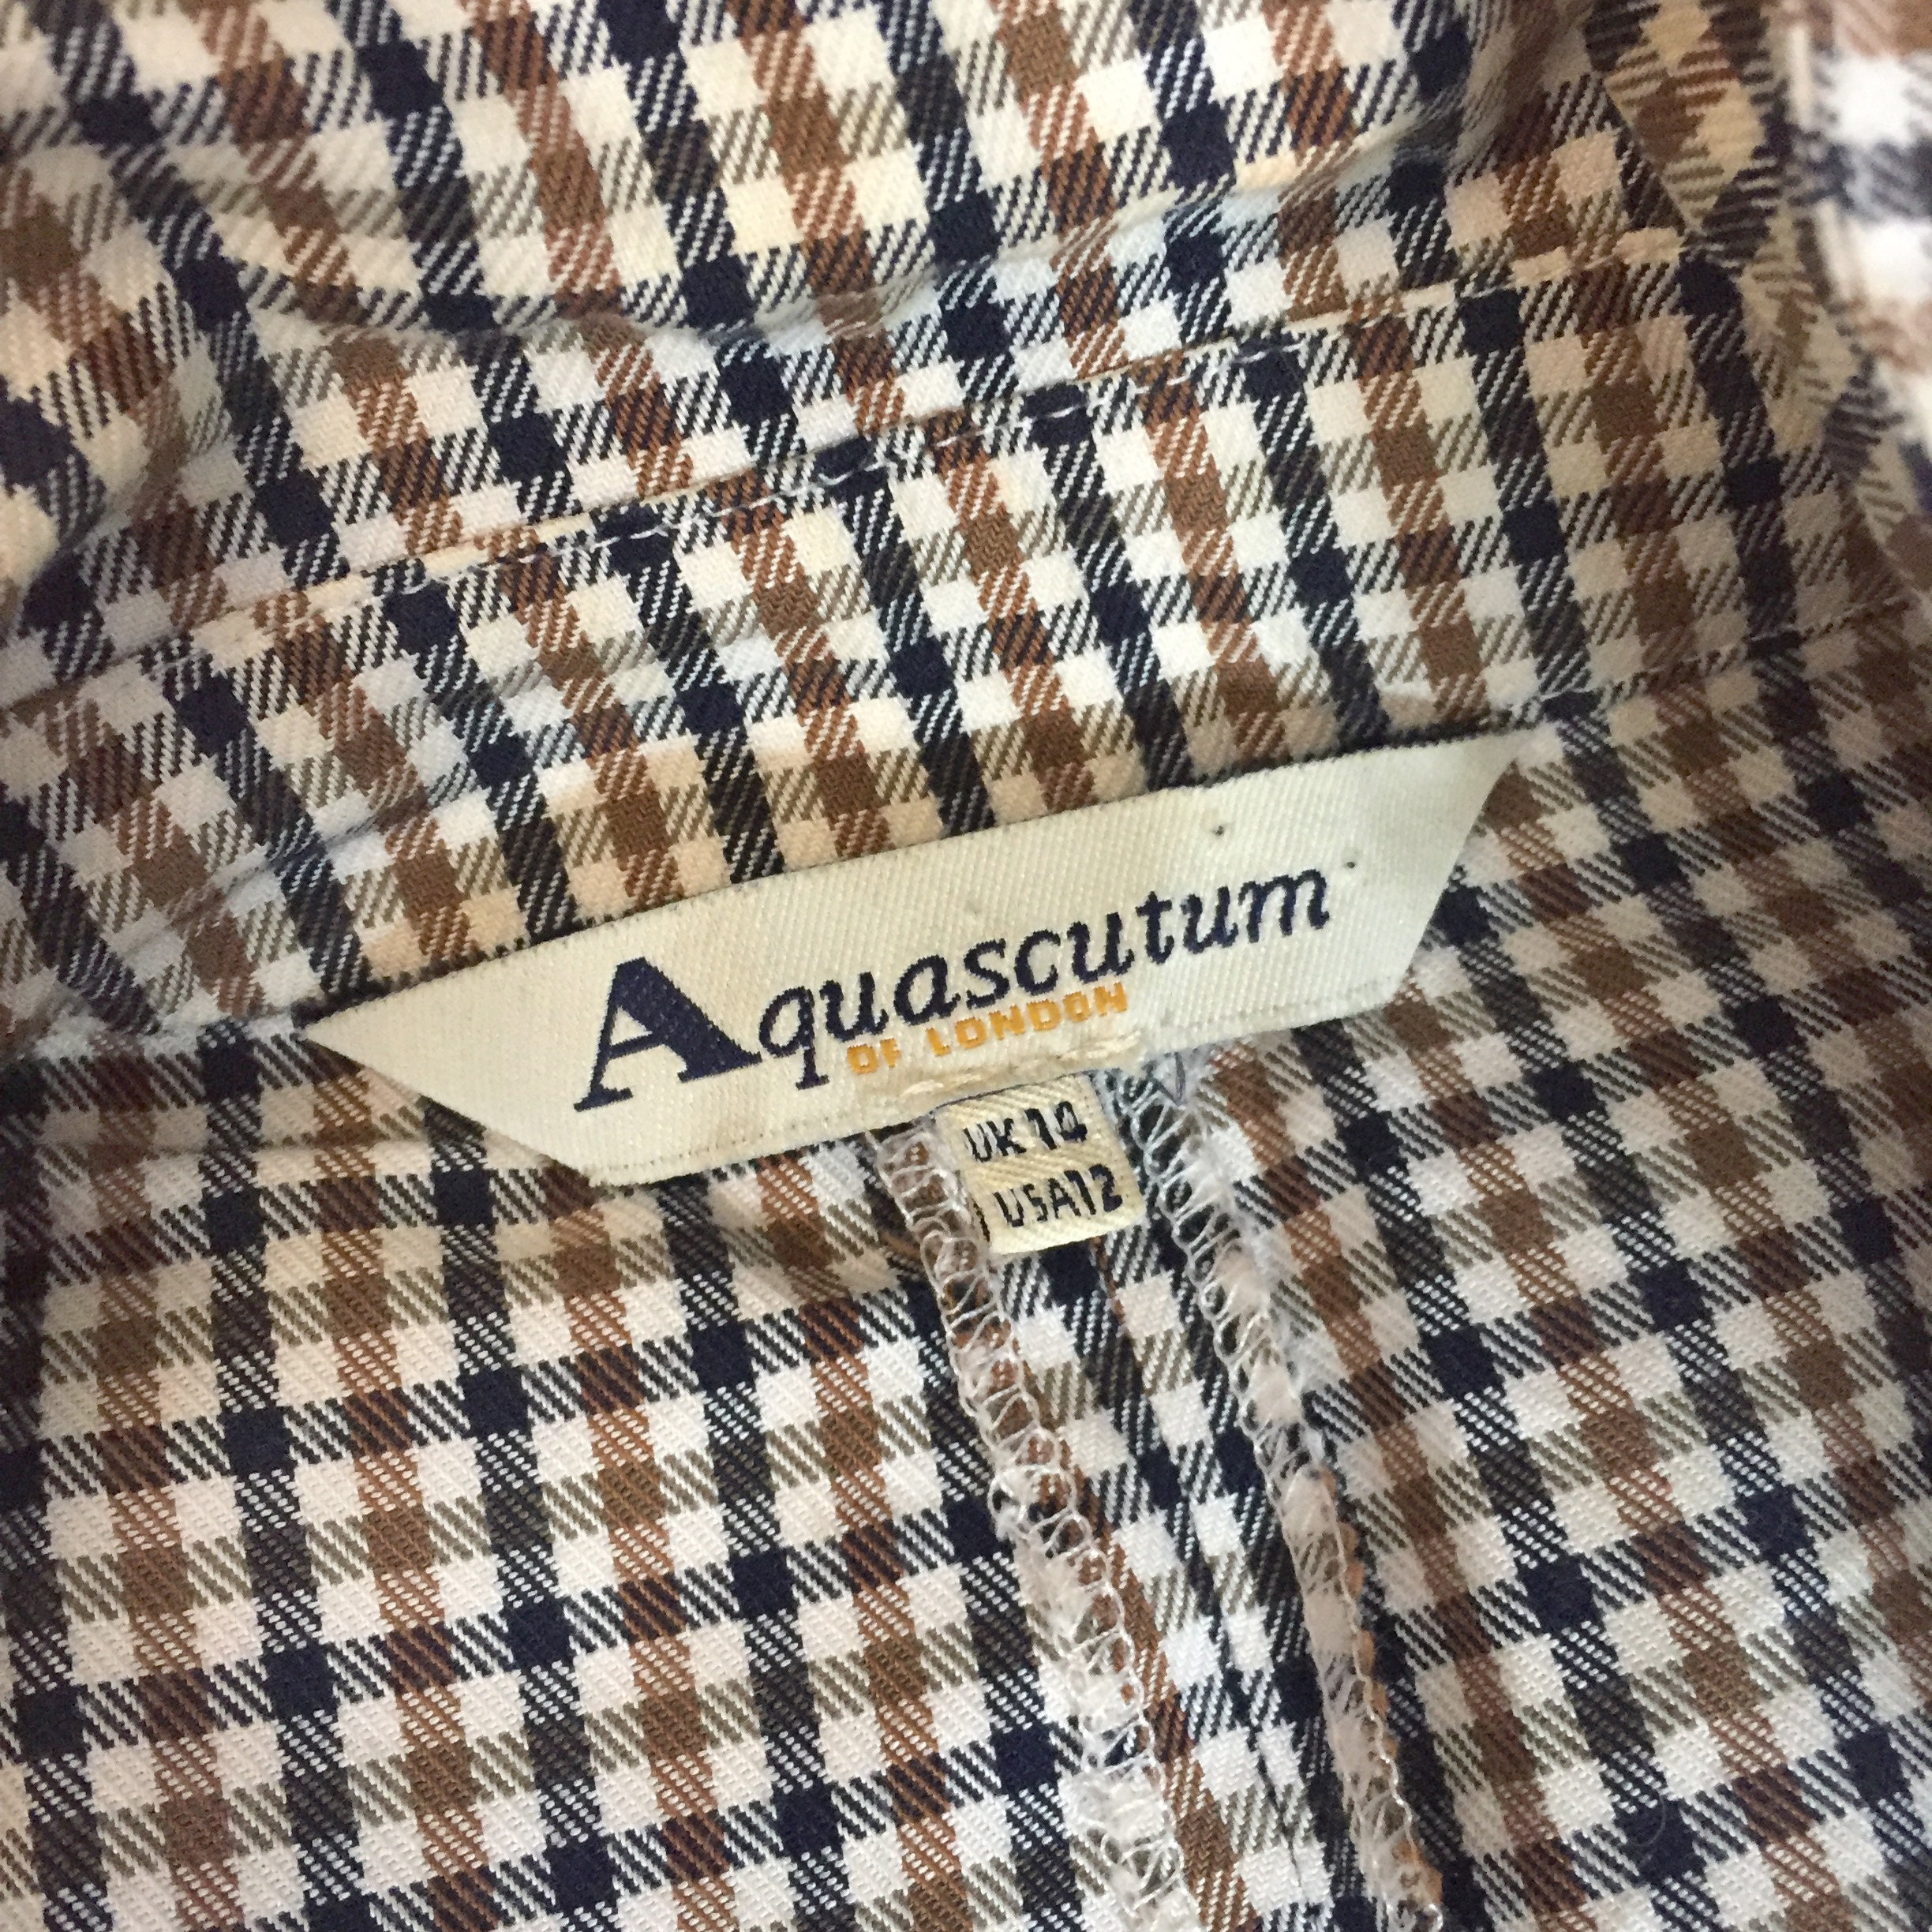 Aquascutum cotton shirt dress uk size 10/ small 12